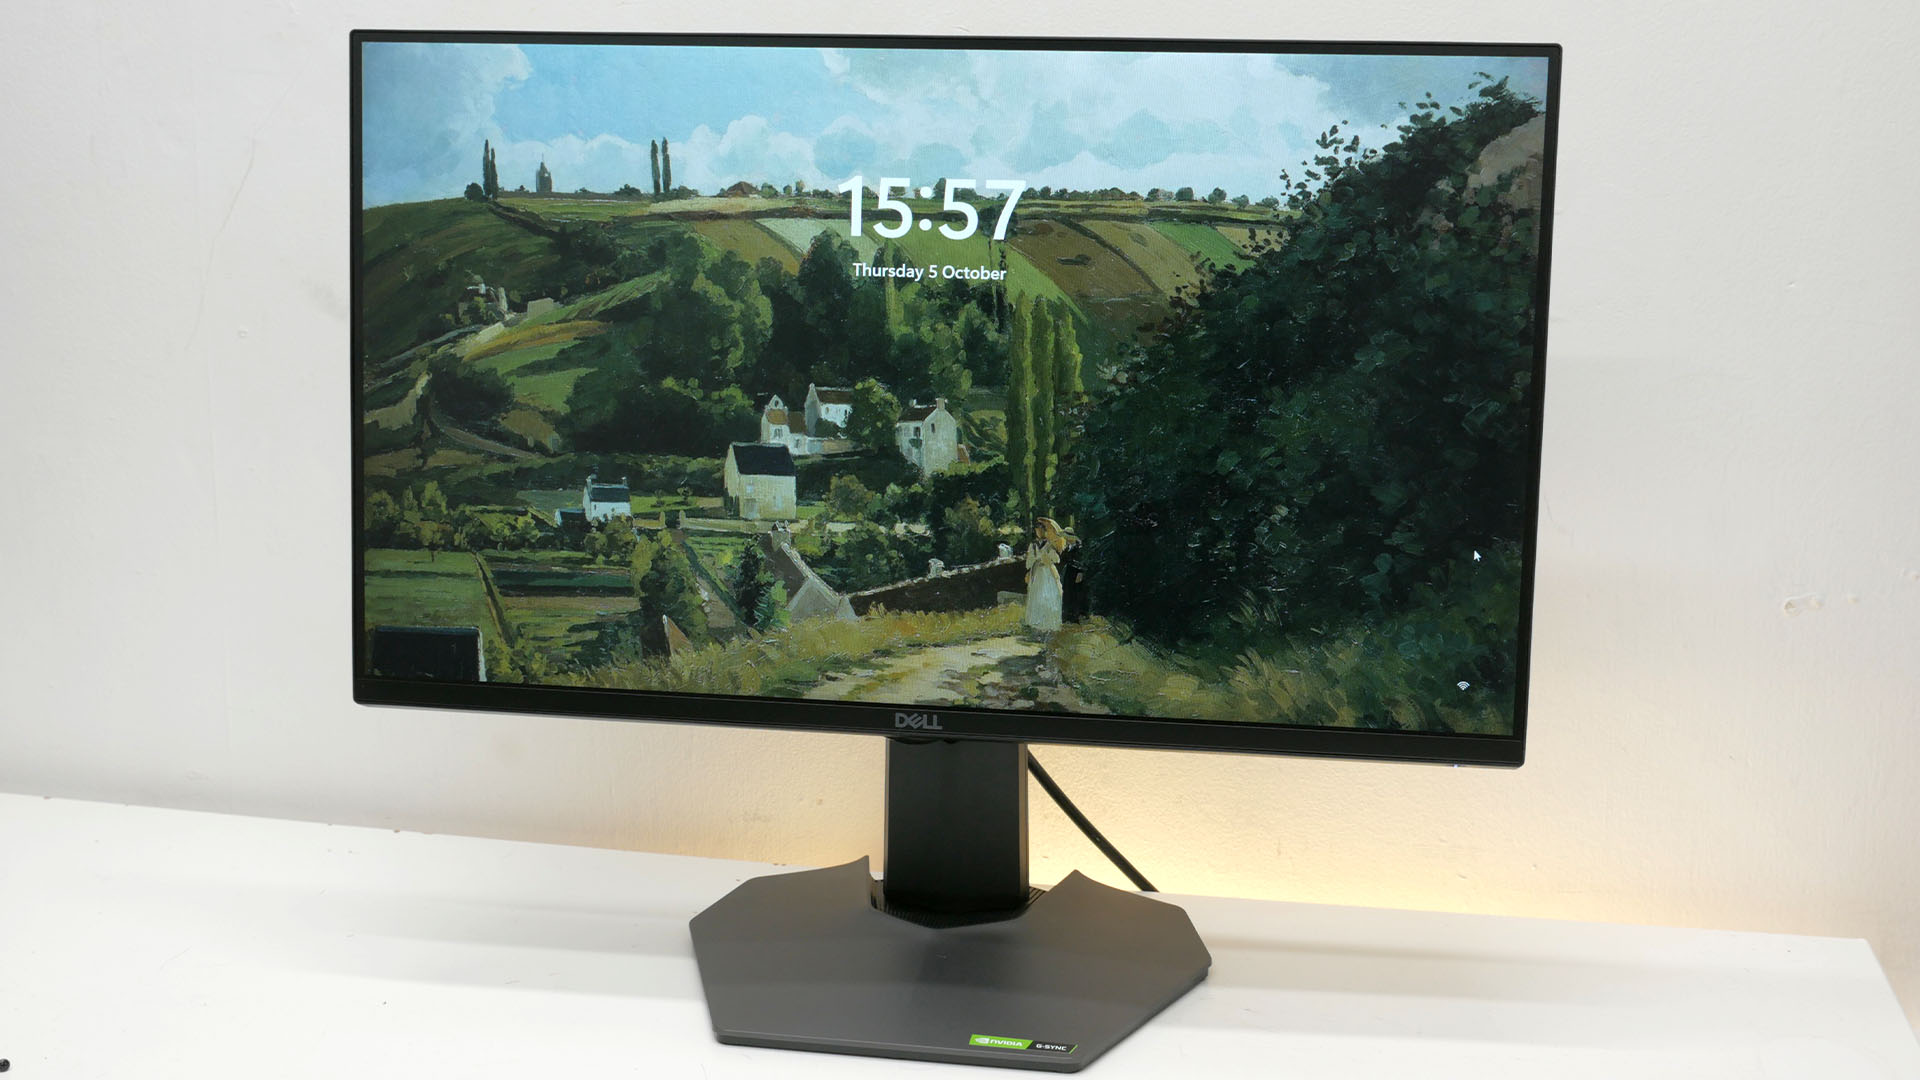 Dell G2524H inceleme görüntüsü, ekranın arkasında görünen ekran koruyucuyla birlikte monitörün ön tarafını gösteriyor.